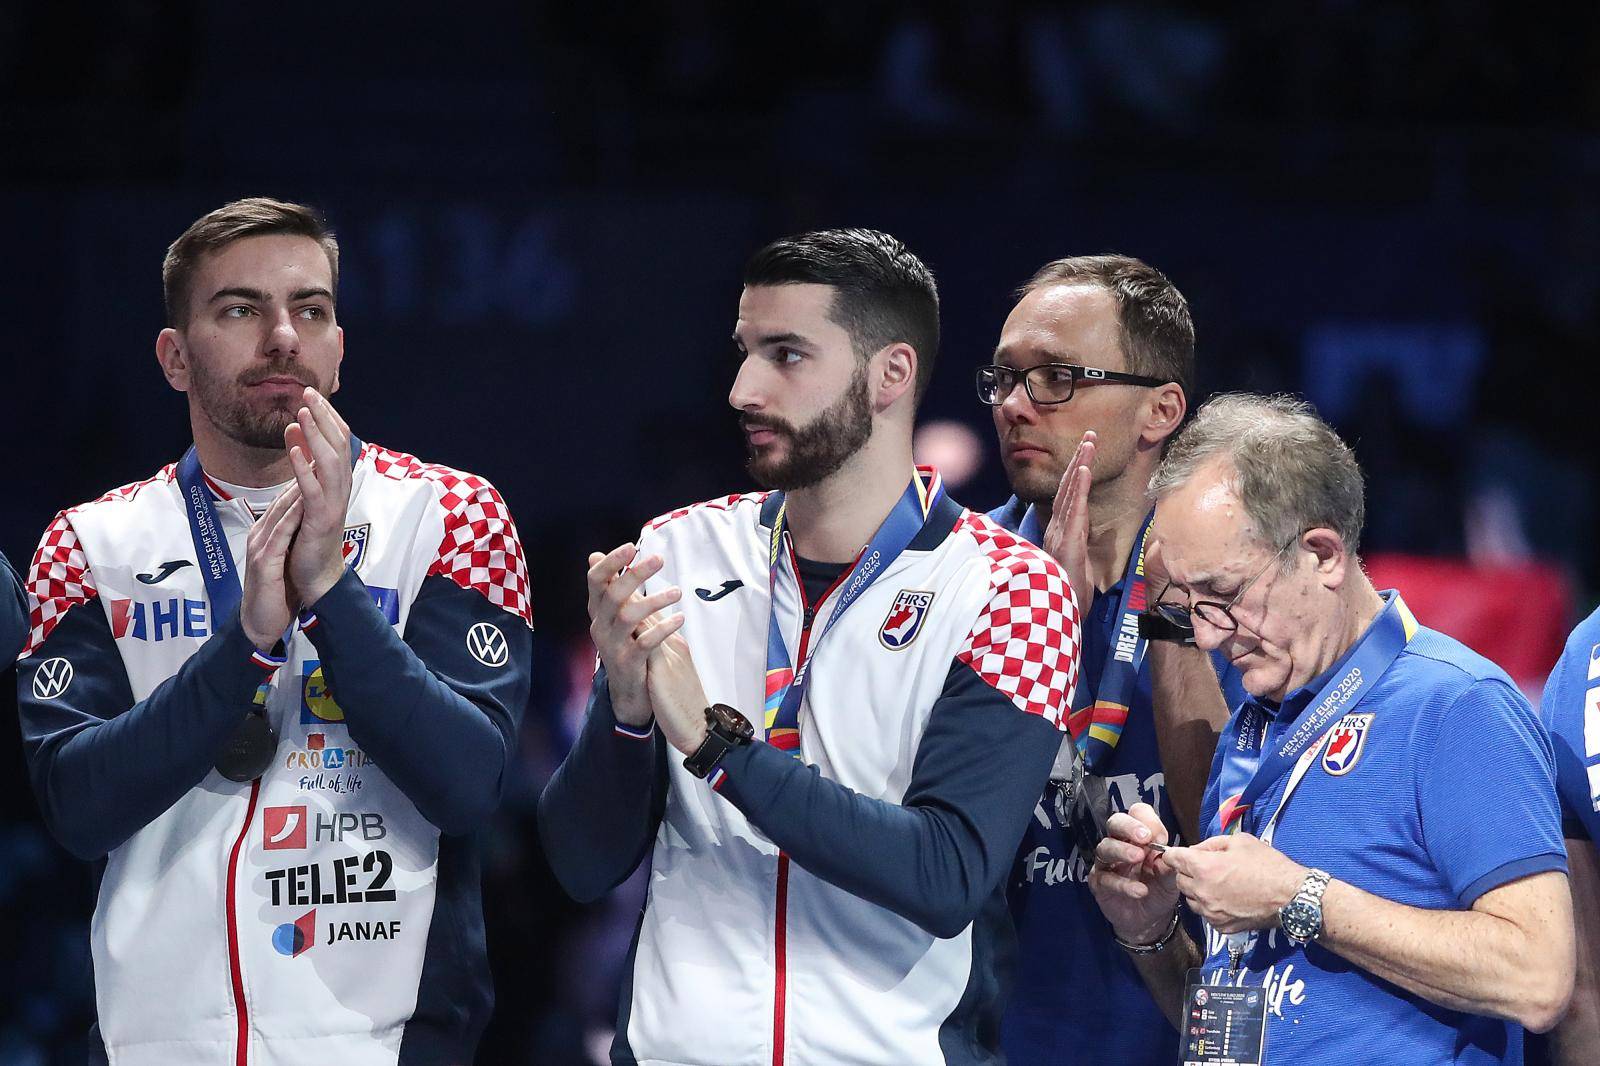 Stockholm: Rukometaši Hrvatske nakon borbe u finalu okrunjeni srebrnim medaljama